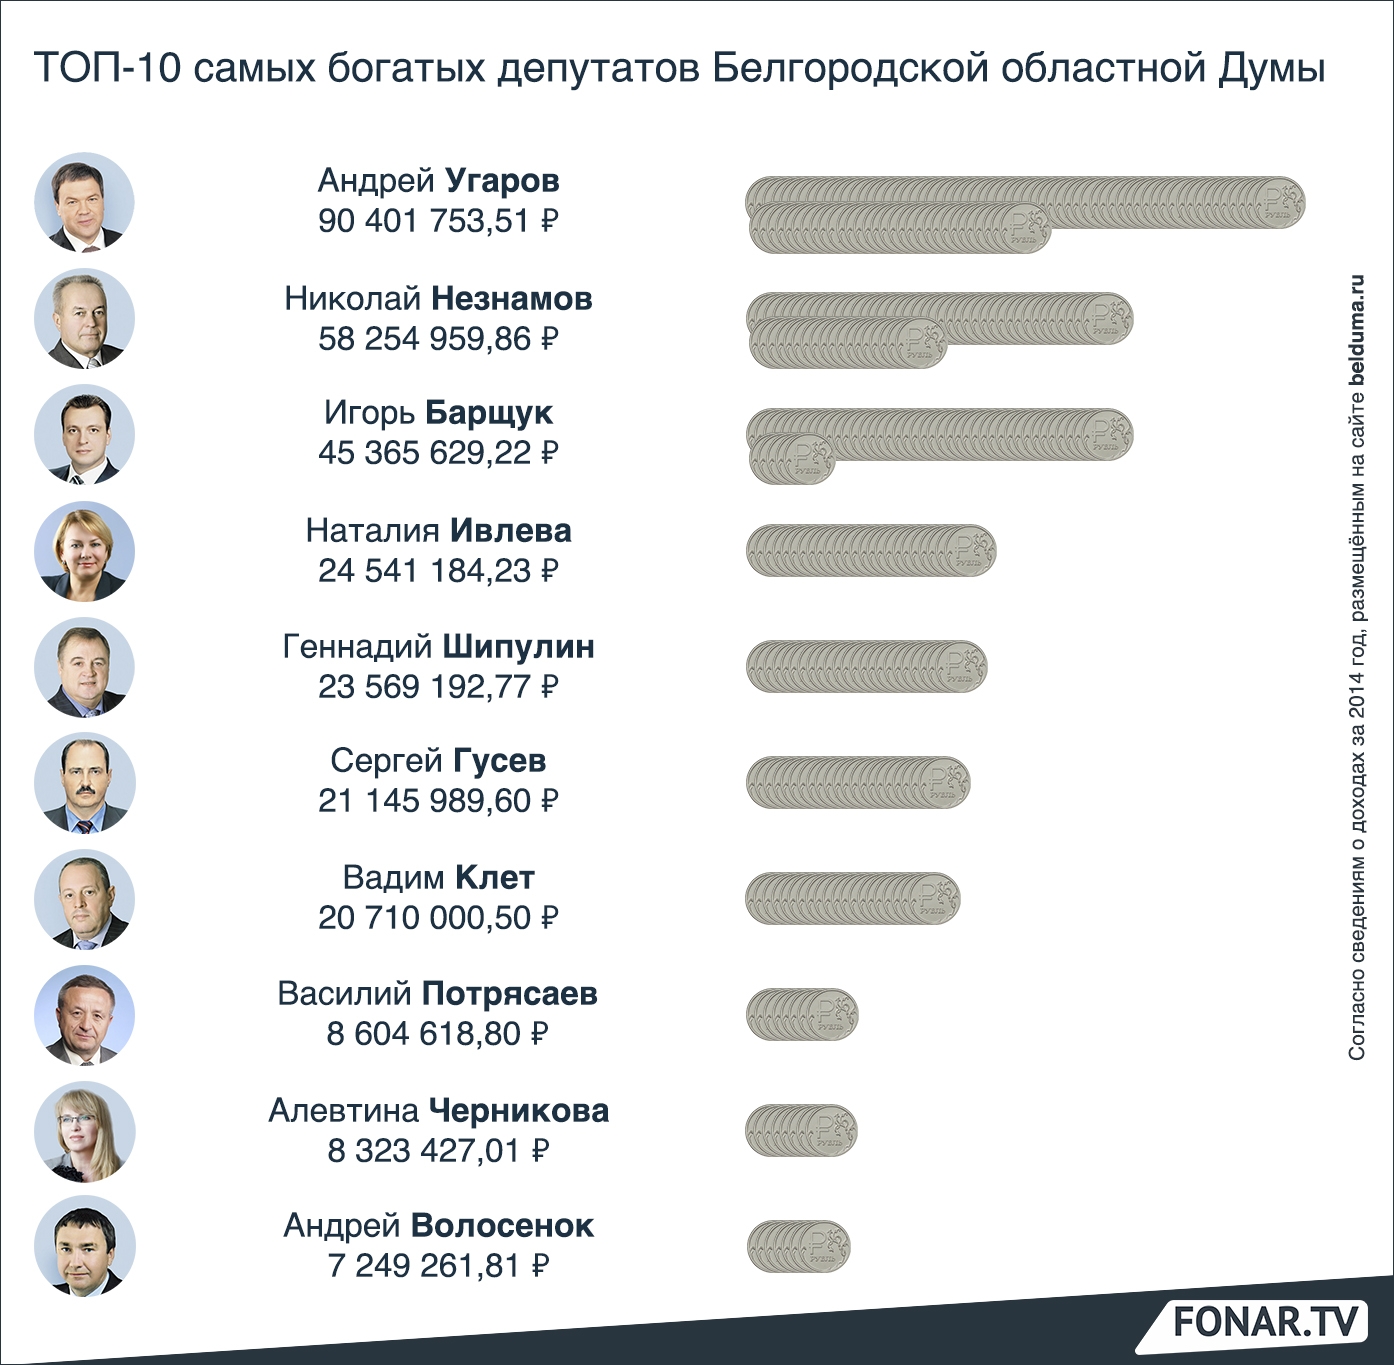 Как отчитались о доходах депутаты за 2014 год (в рейтинге не все парламентарии, так как некоторые не подали в срок)